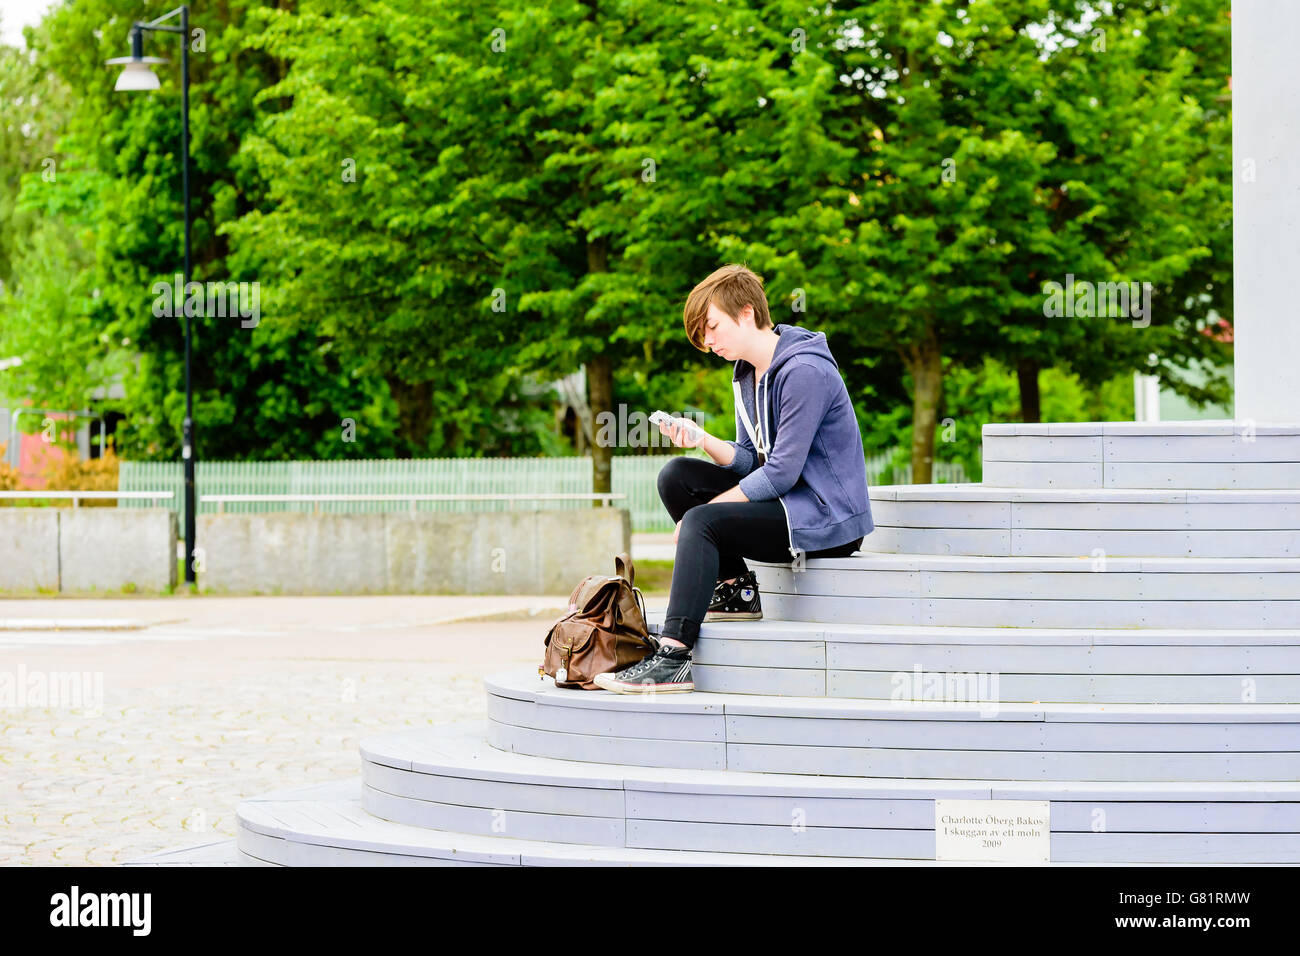 Soderkoping, Svezia - 20 Giugno 2016: il giovane adulto seduto sulle scale di un monumento artistico mentre texting sul mobil Foto Stock